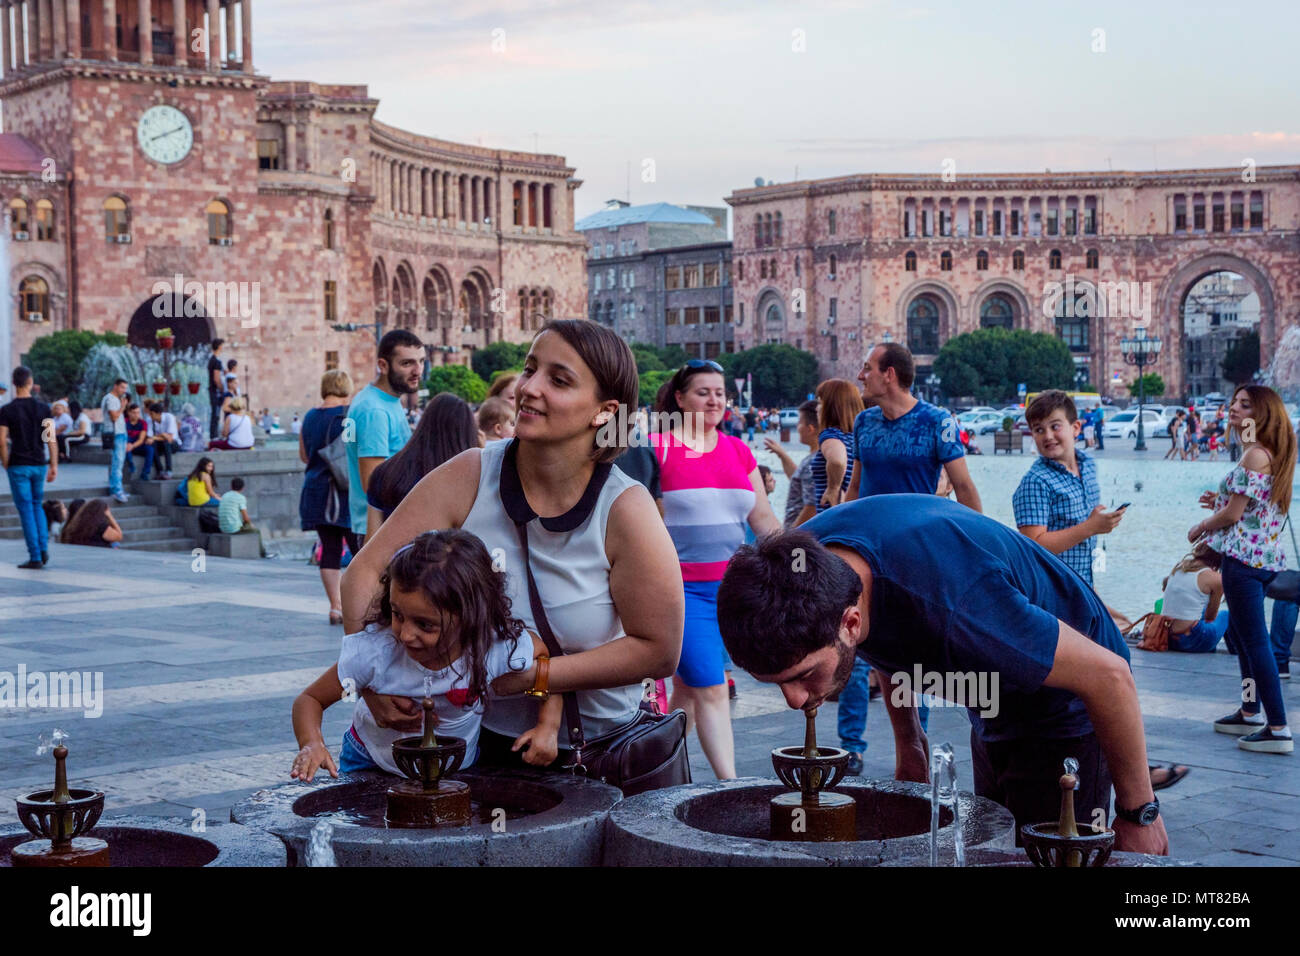 YEREVAN, Armenien - AUGUST 2: Menschen Trinkwasser aus dem Brunnen am Platz der Republik an einem heißen Sommertag. August 2017 Stockfoto